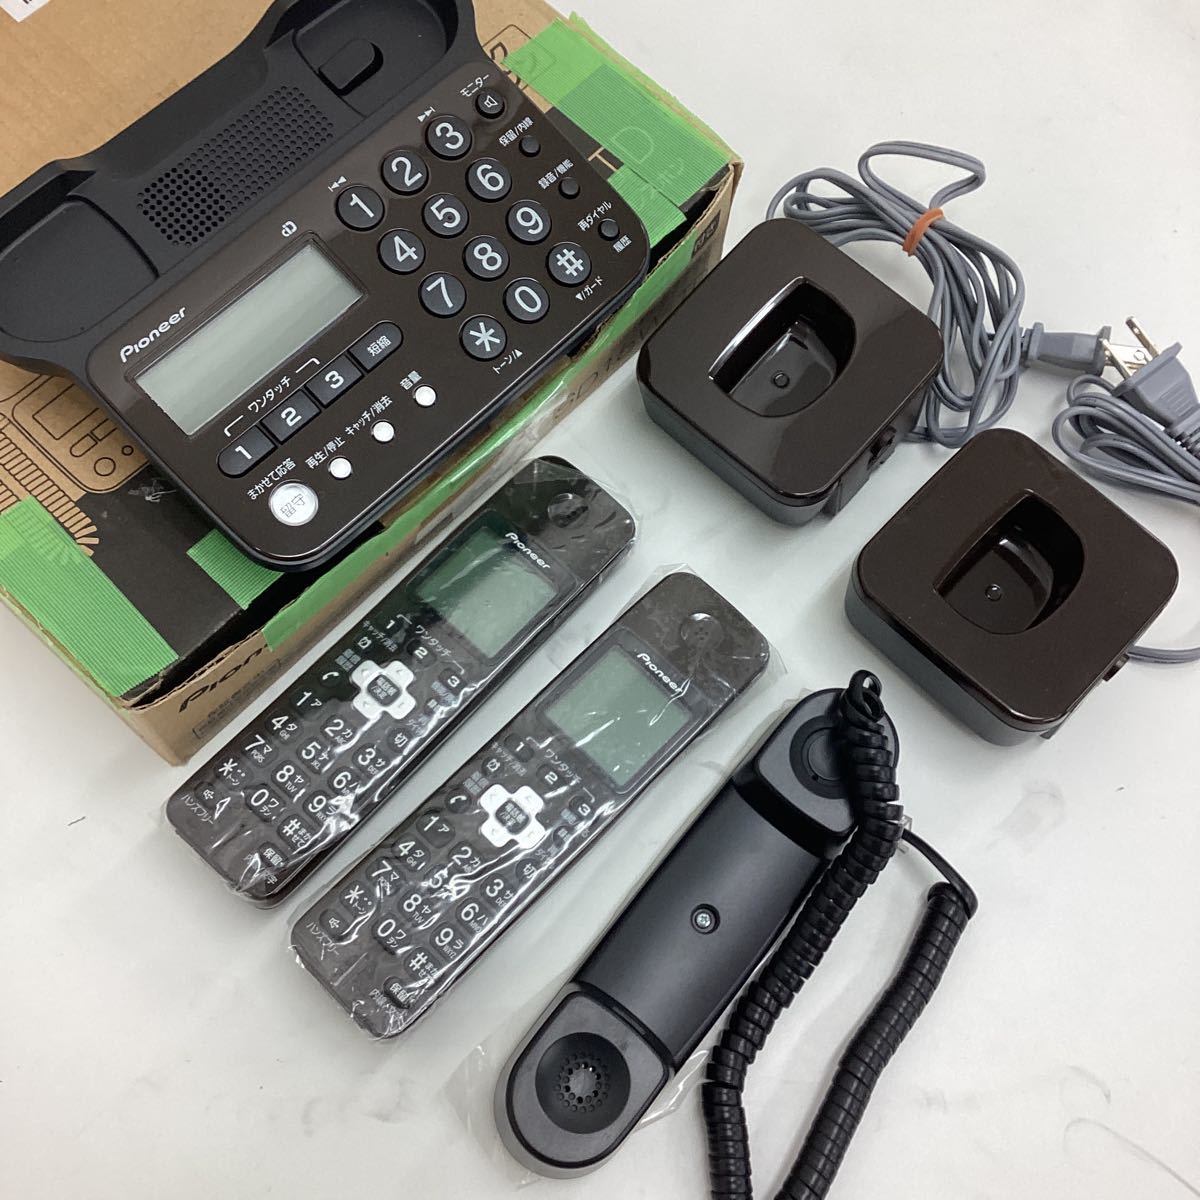 パイオニア TF-SD15W デジタルコードレス電話機 子機2台付き/迷惑電話対策 ダークブラウン TF-SD15W-TDの画像3